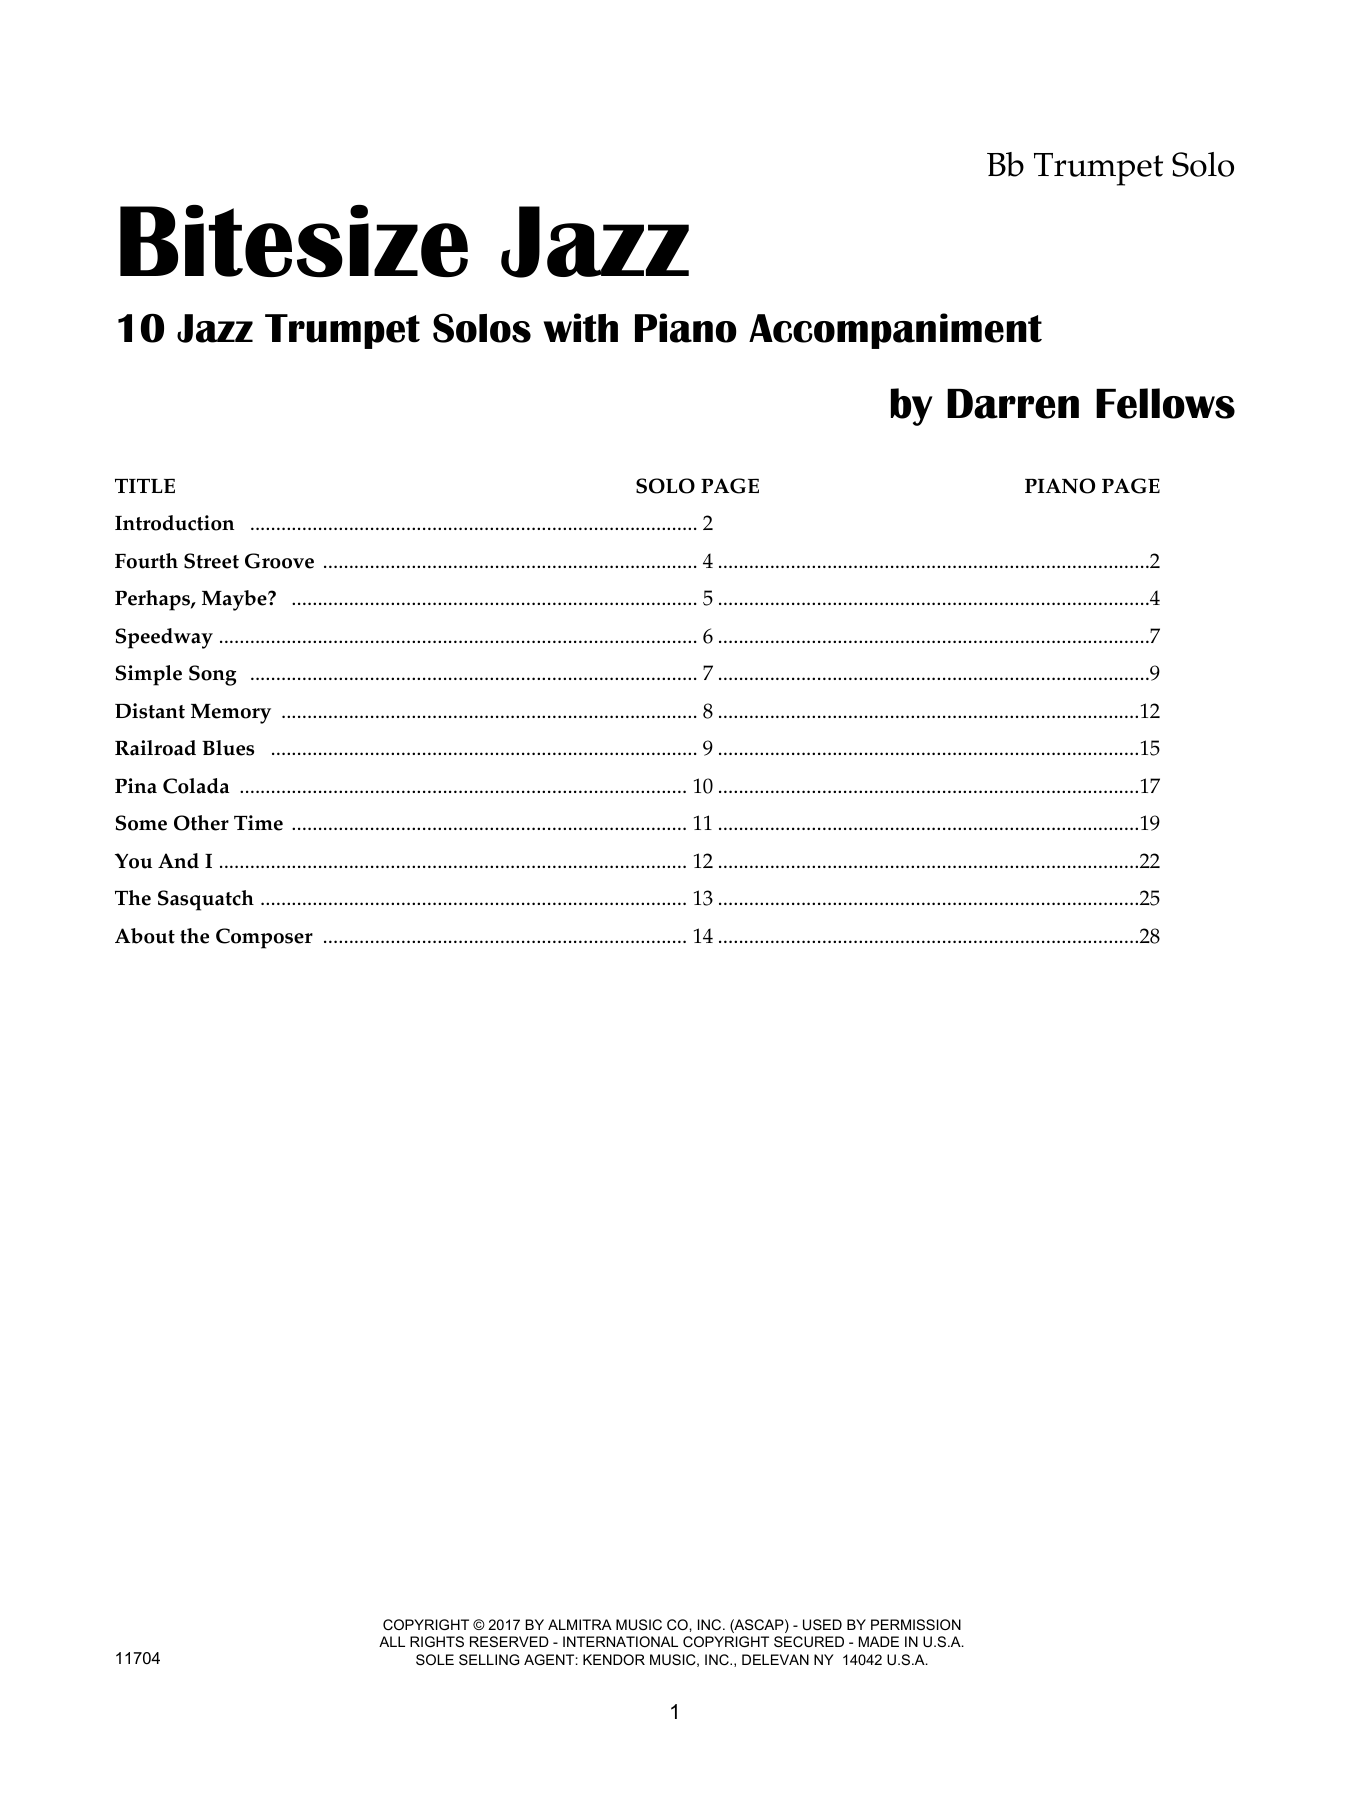 Bitesize Jazz - Bb Trumpet (Brass Solo) von Darren Fellows